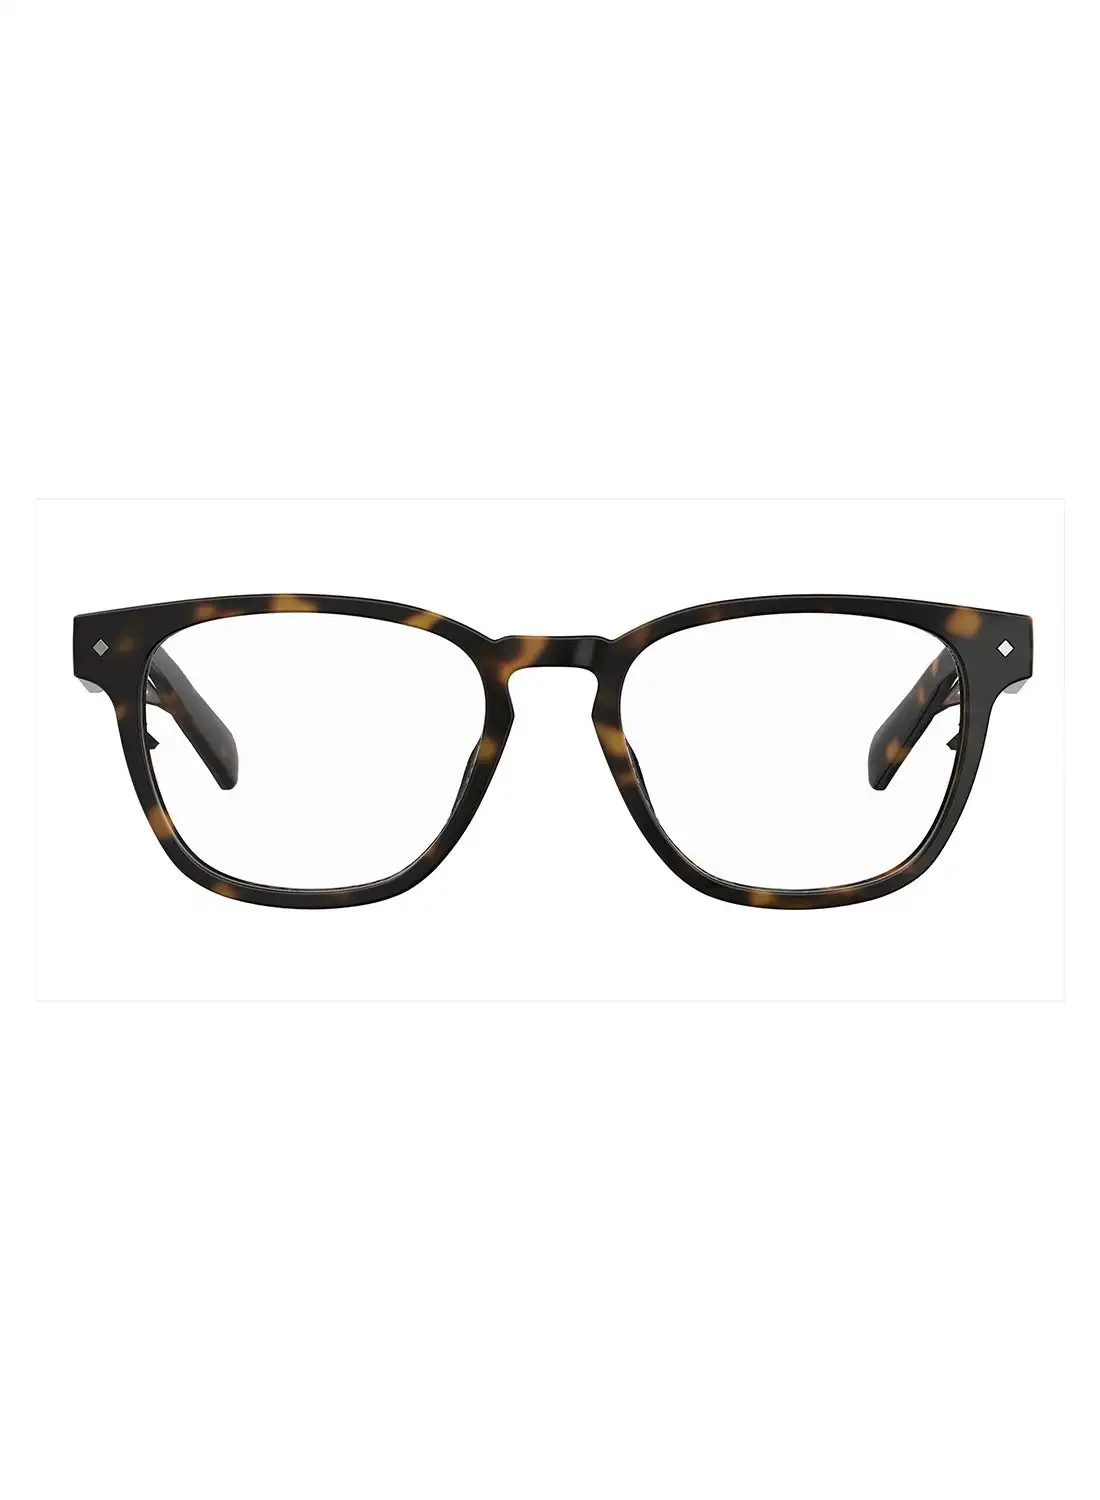 نظارات قراءة مربعة للجنسين من بولارويد - Pld 0022/R هافانا 50 - مقاس العدسة: 50 ملم